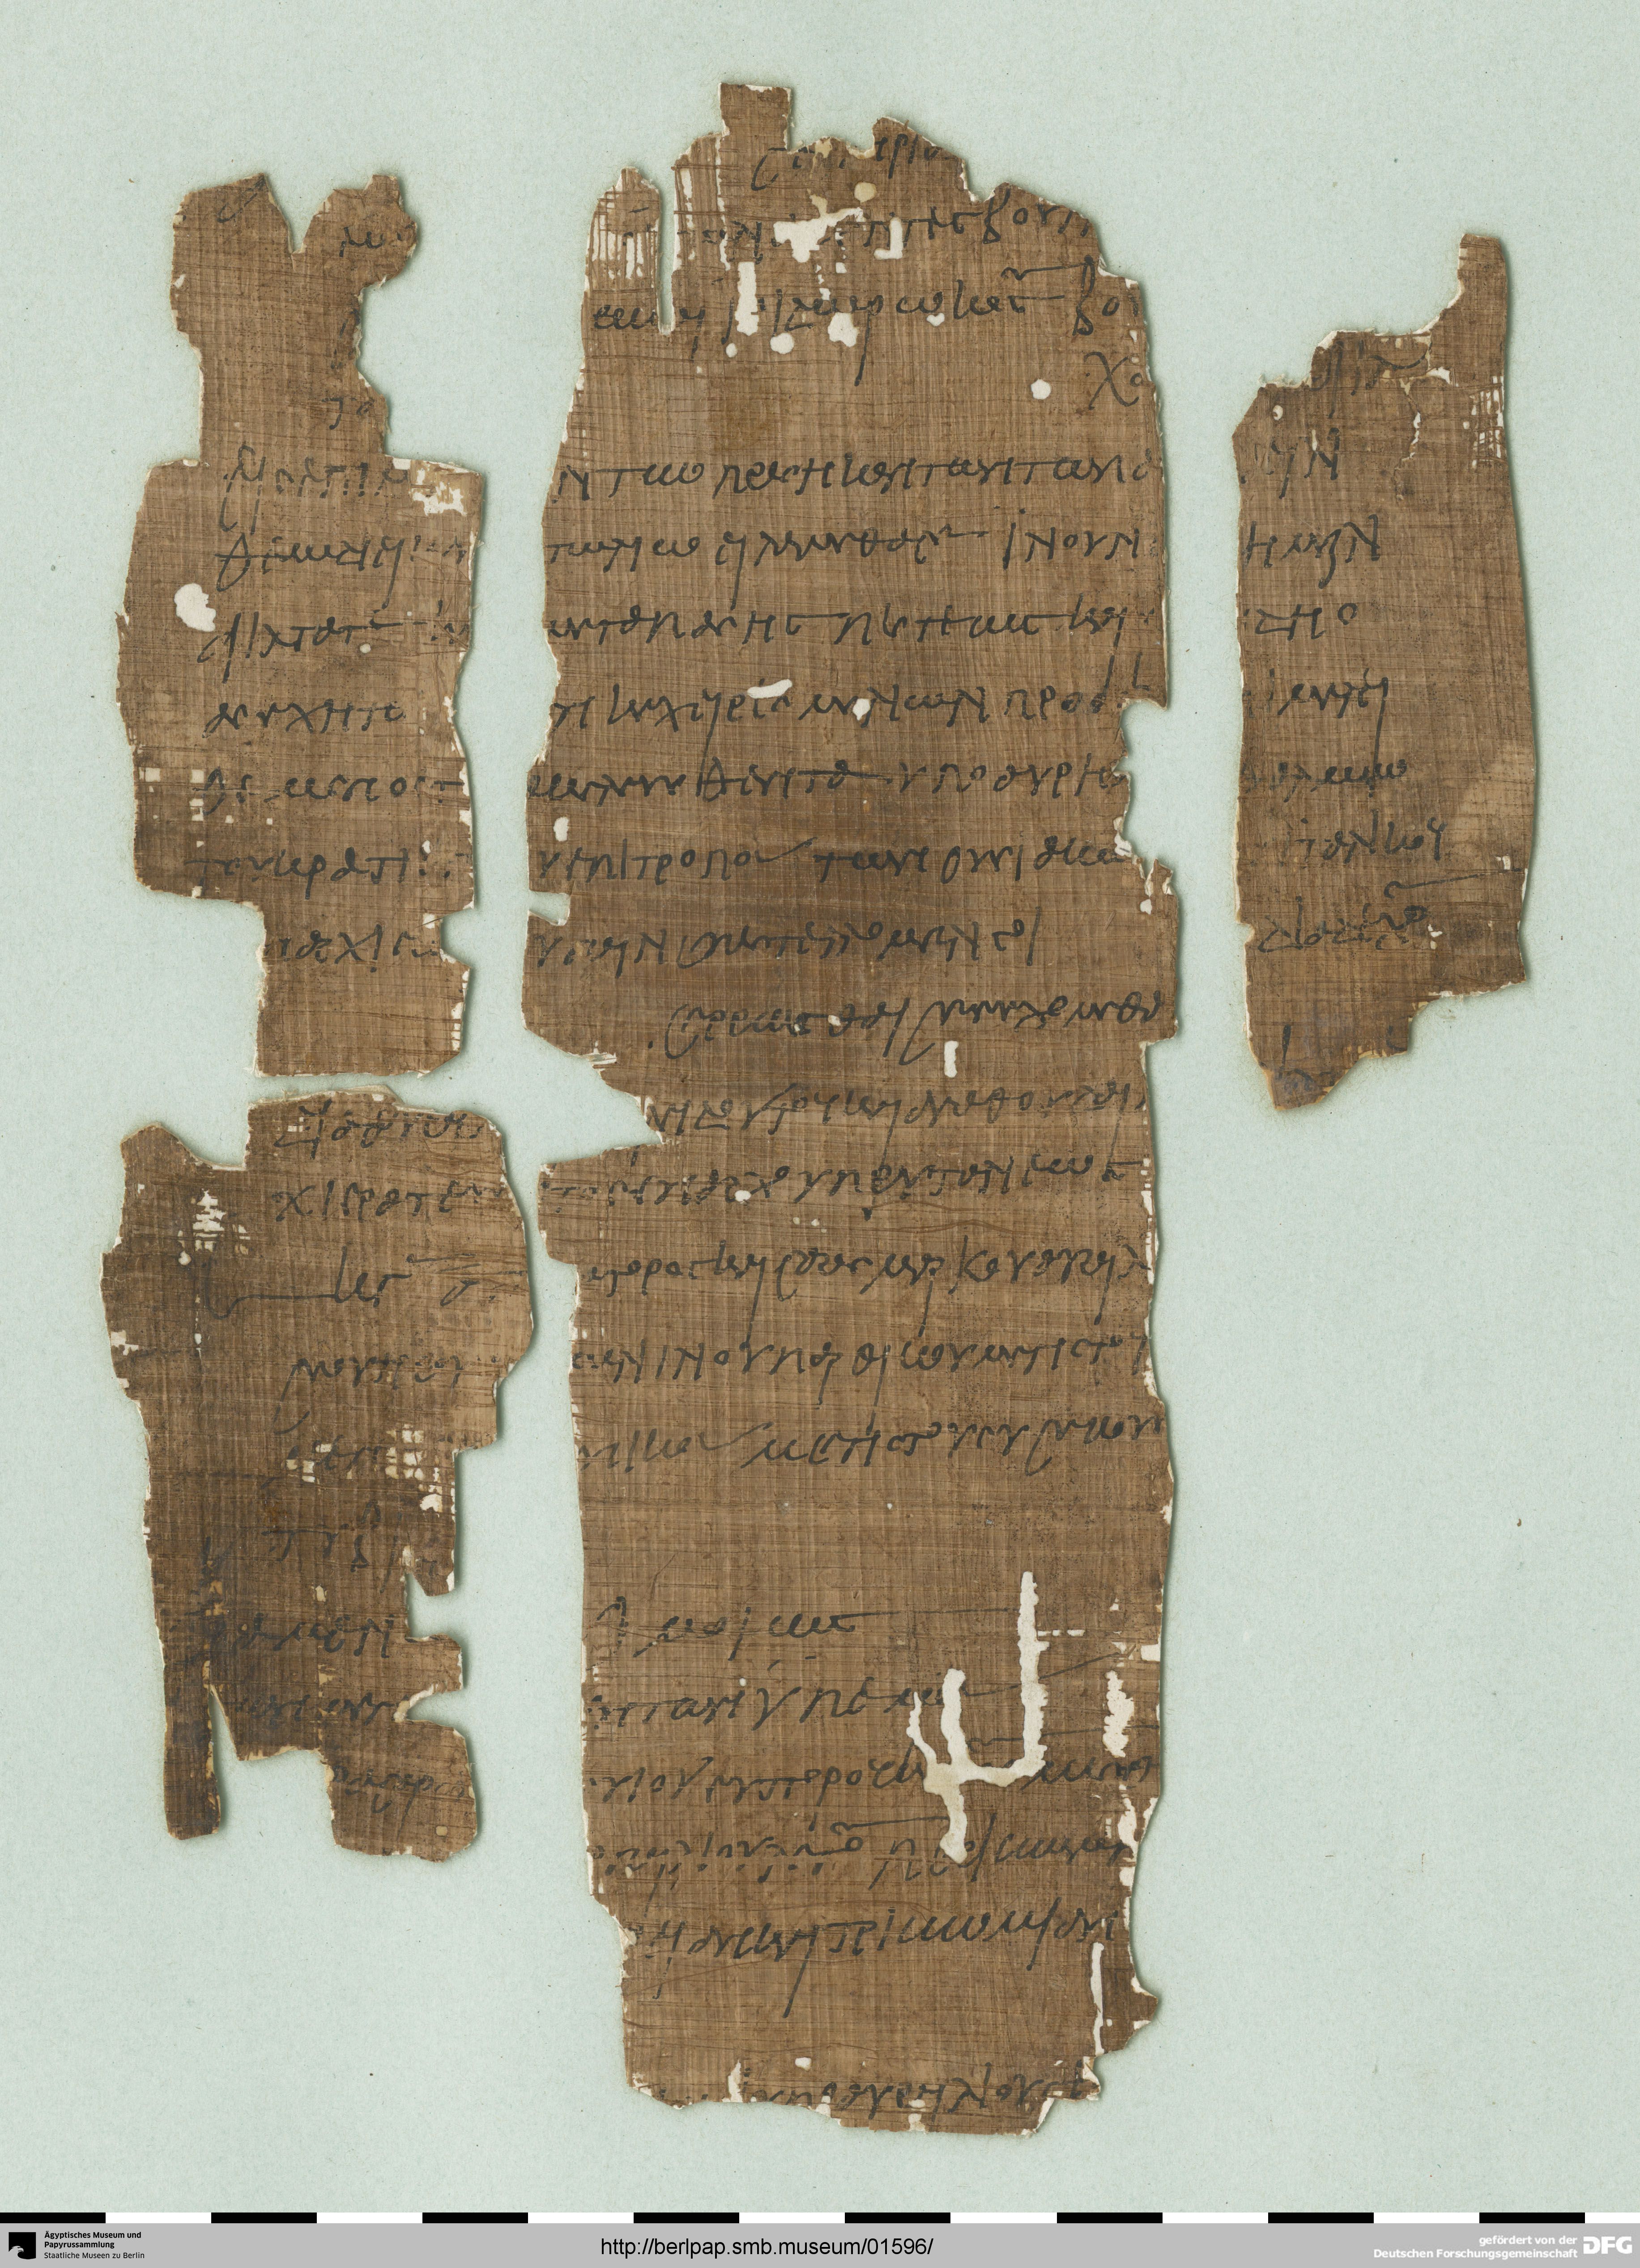 http://berlpap.smb.museum/Original/P_05085_R_001.jpg (Ägyptisches Museum und Papyrussammlung, Staatliche Museen zu Berlin CC BY-NC-SA)